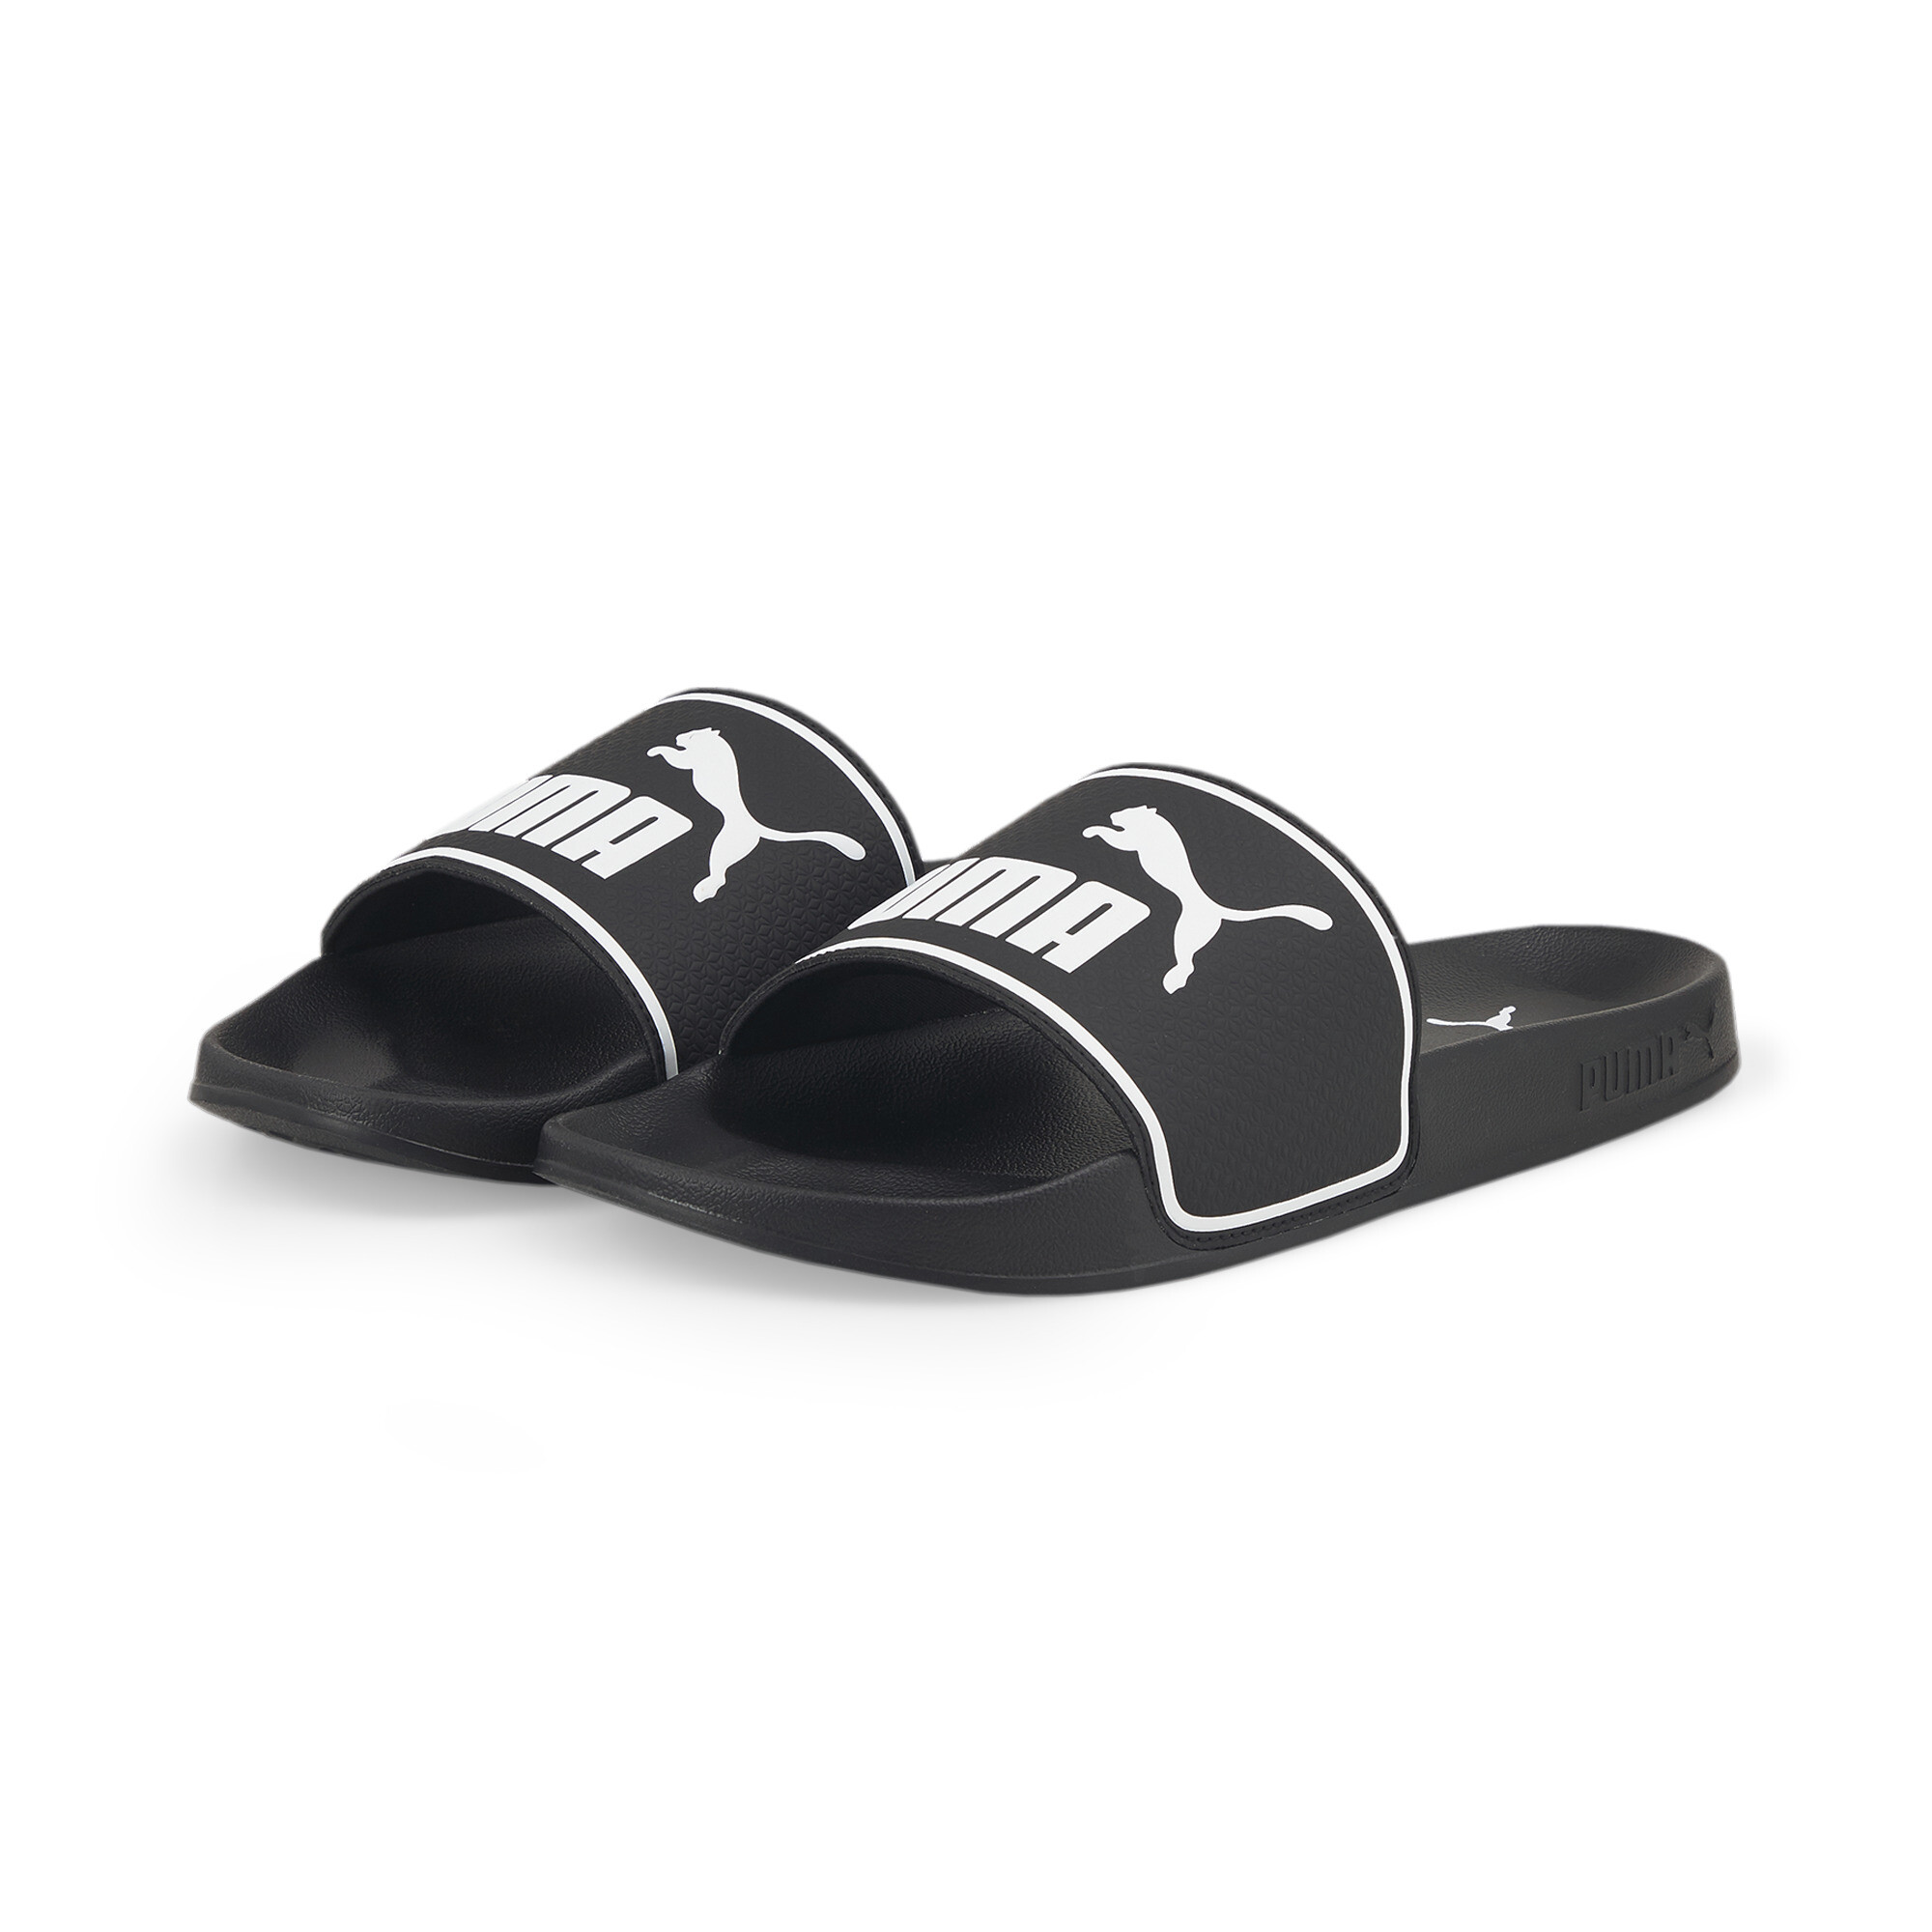 Men's PUMA Leadcat 2.0 Sandals In Black, Size EU 39